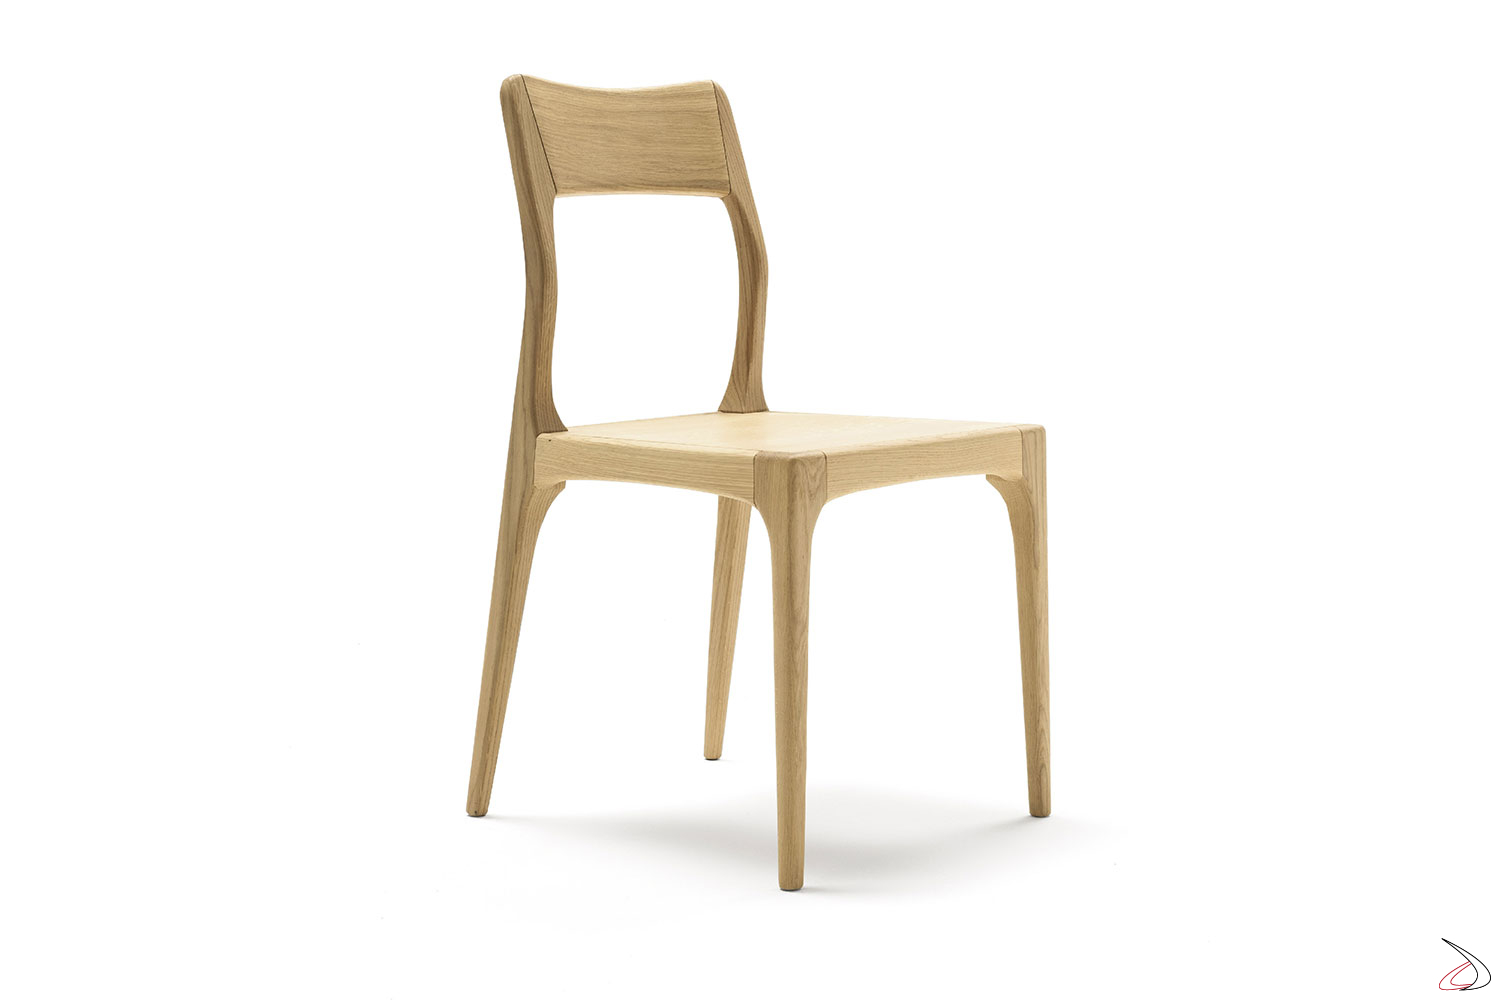 Classica sedia in legno rivisitata in chiave moderna, con delle leggere curvature nello schienale per ottimizzare il comfort. Disponibile in vari colori.